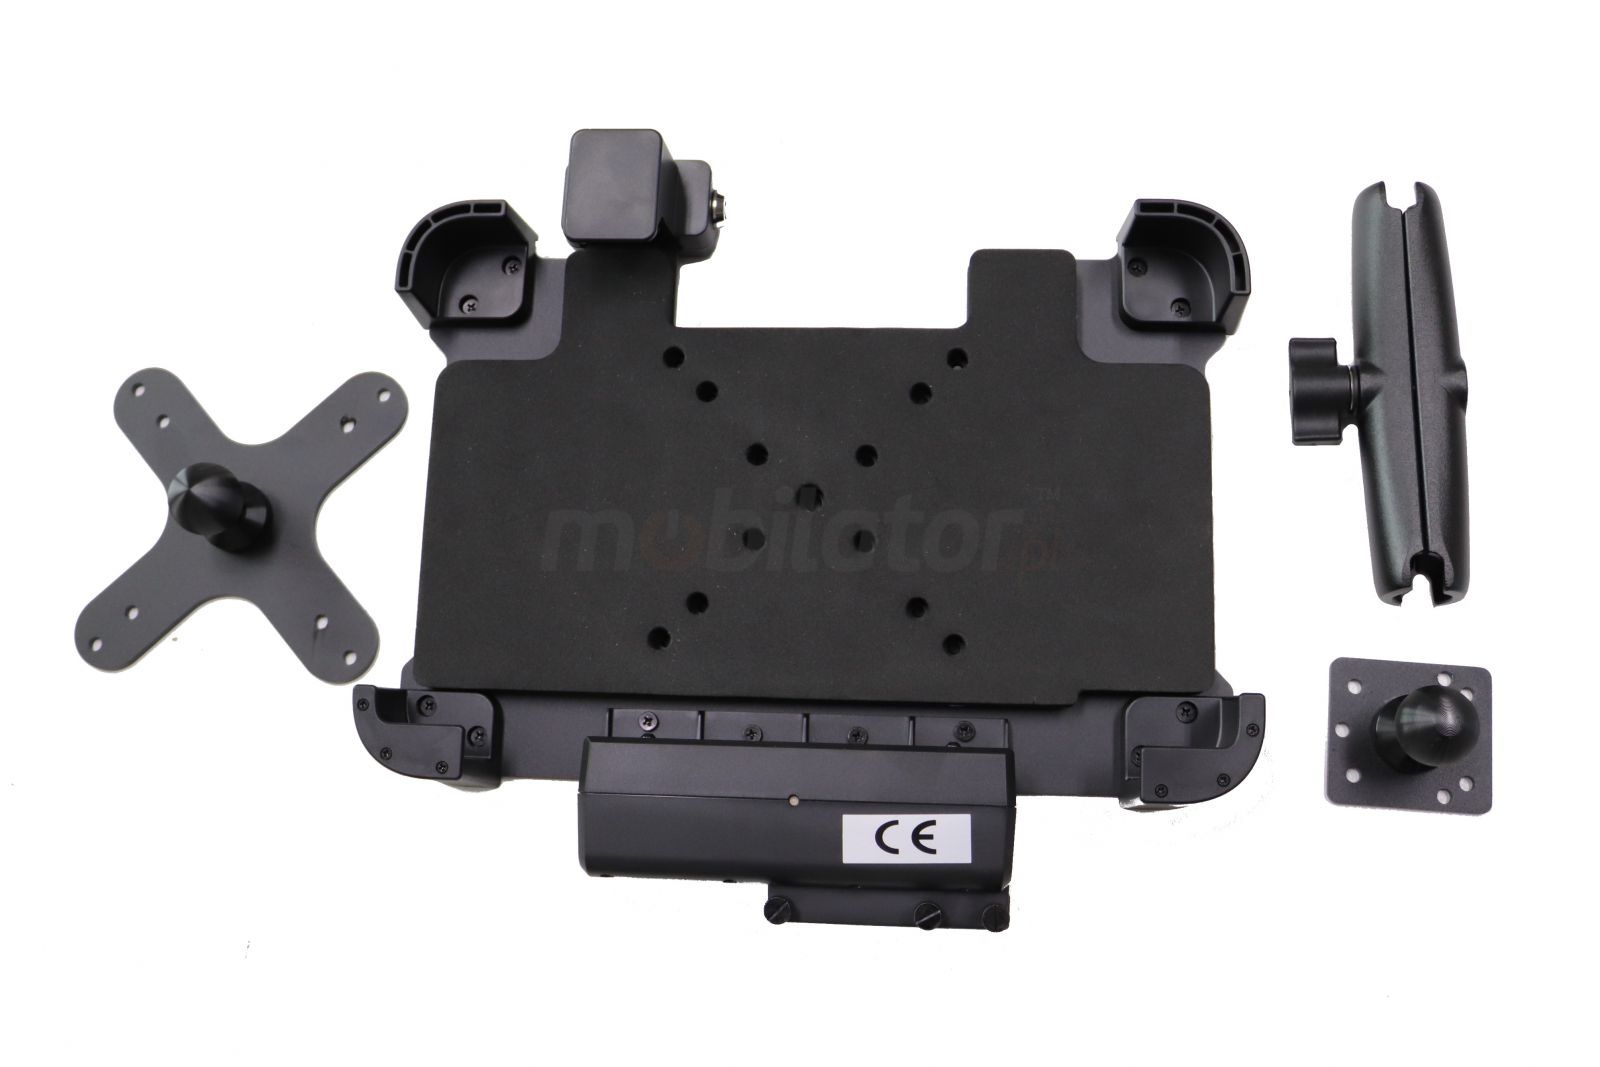 Lockable car holder for tablets I16H / T16 